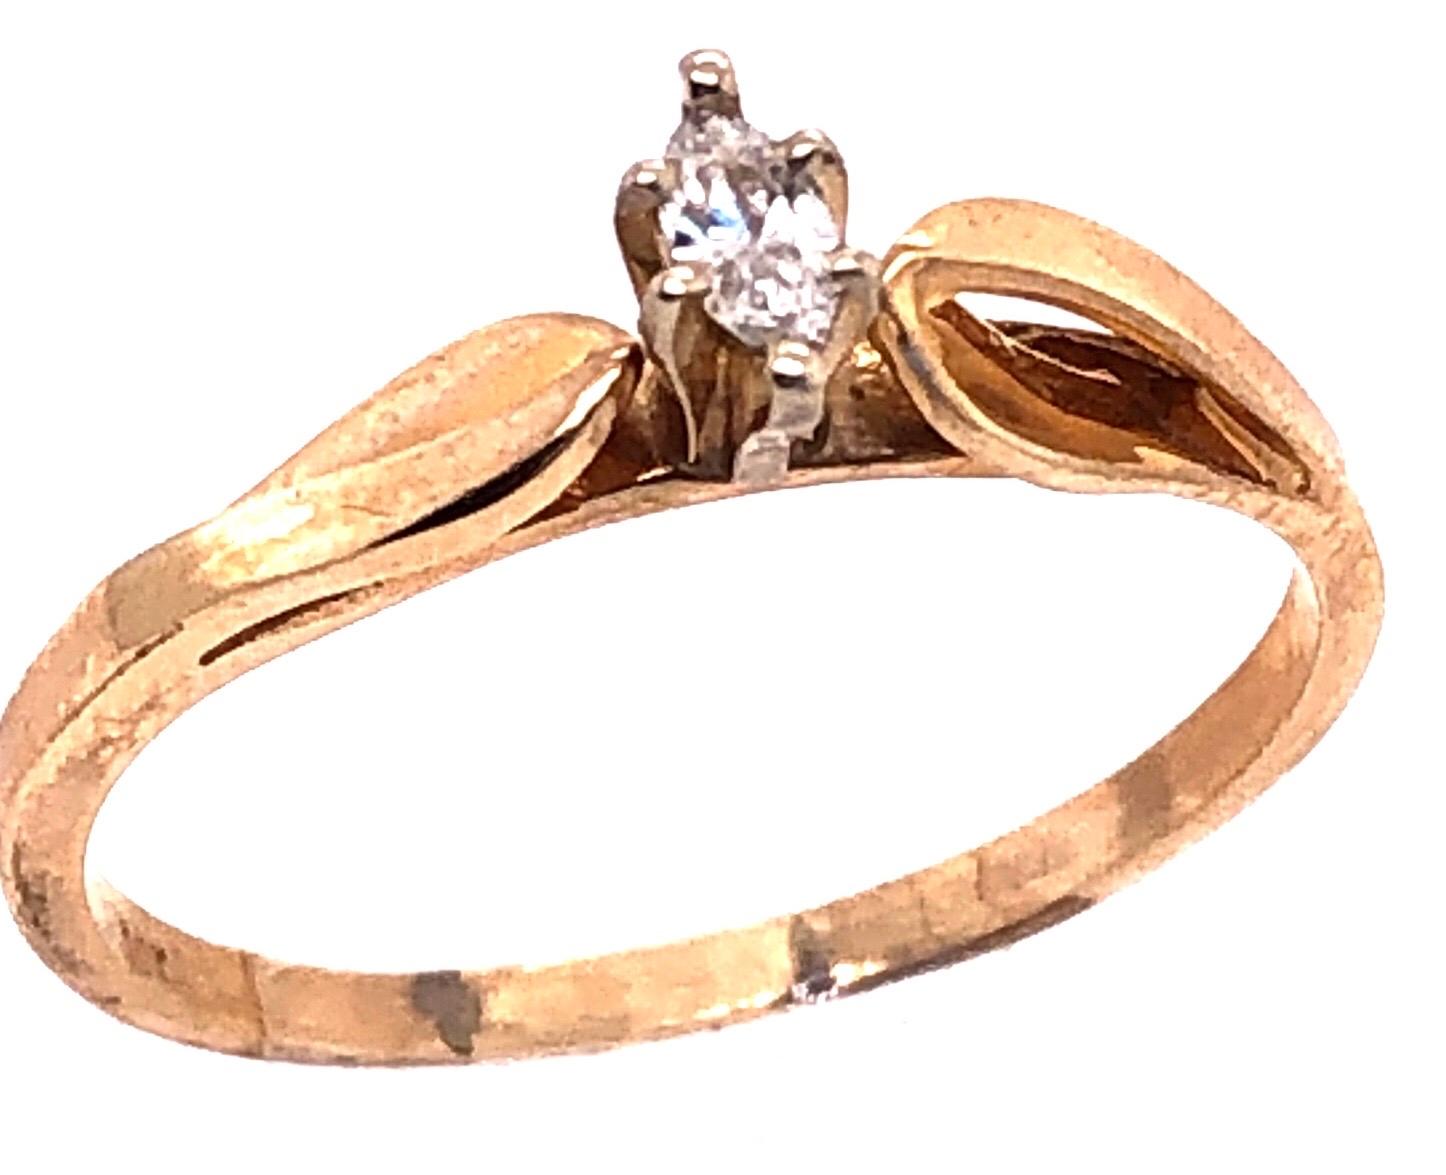 14 Karat Gelbgold Mode Ring mit Diamant 0,10 Total Diamond Weight.
Größe 8
2 Gramm Gesamtgewicht.